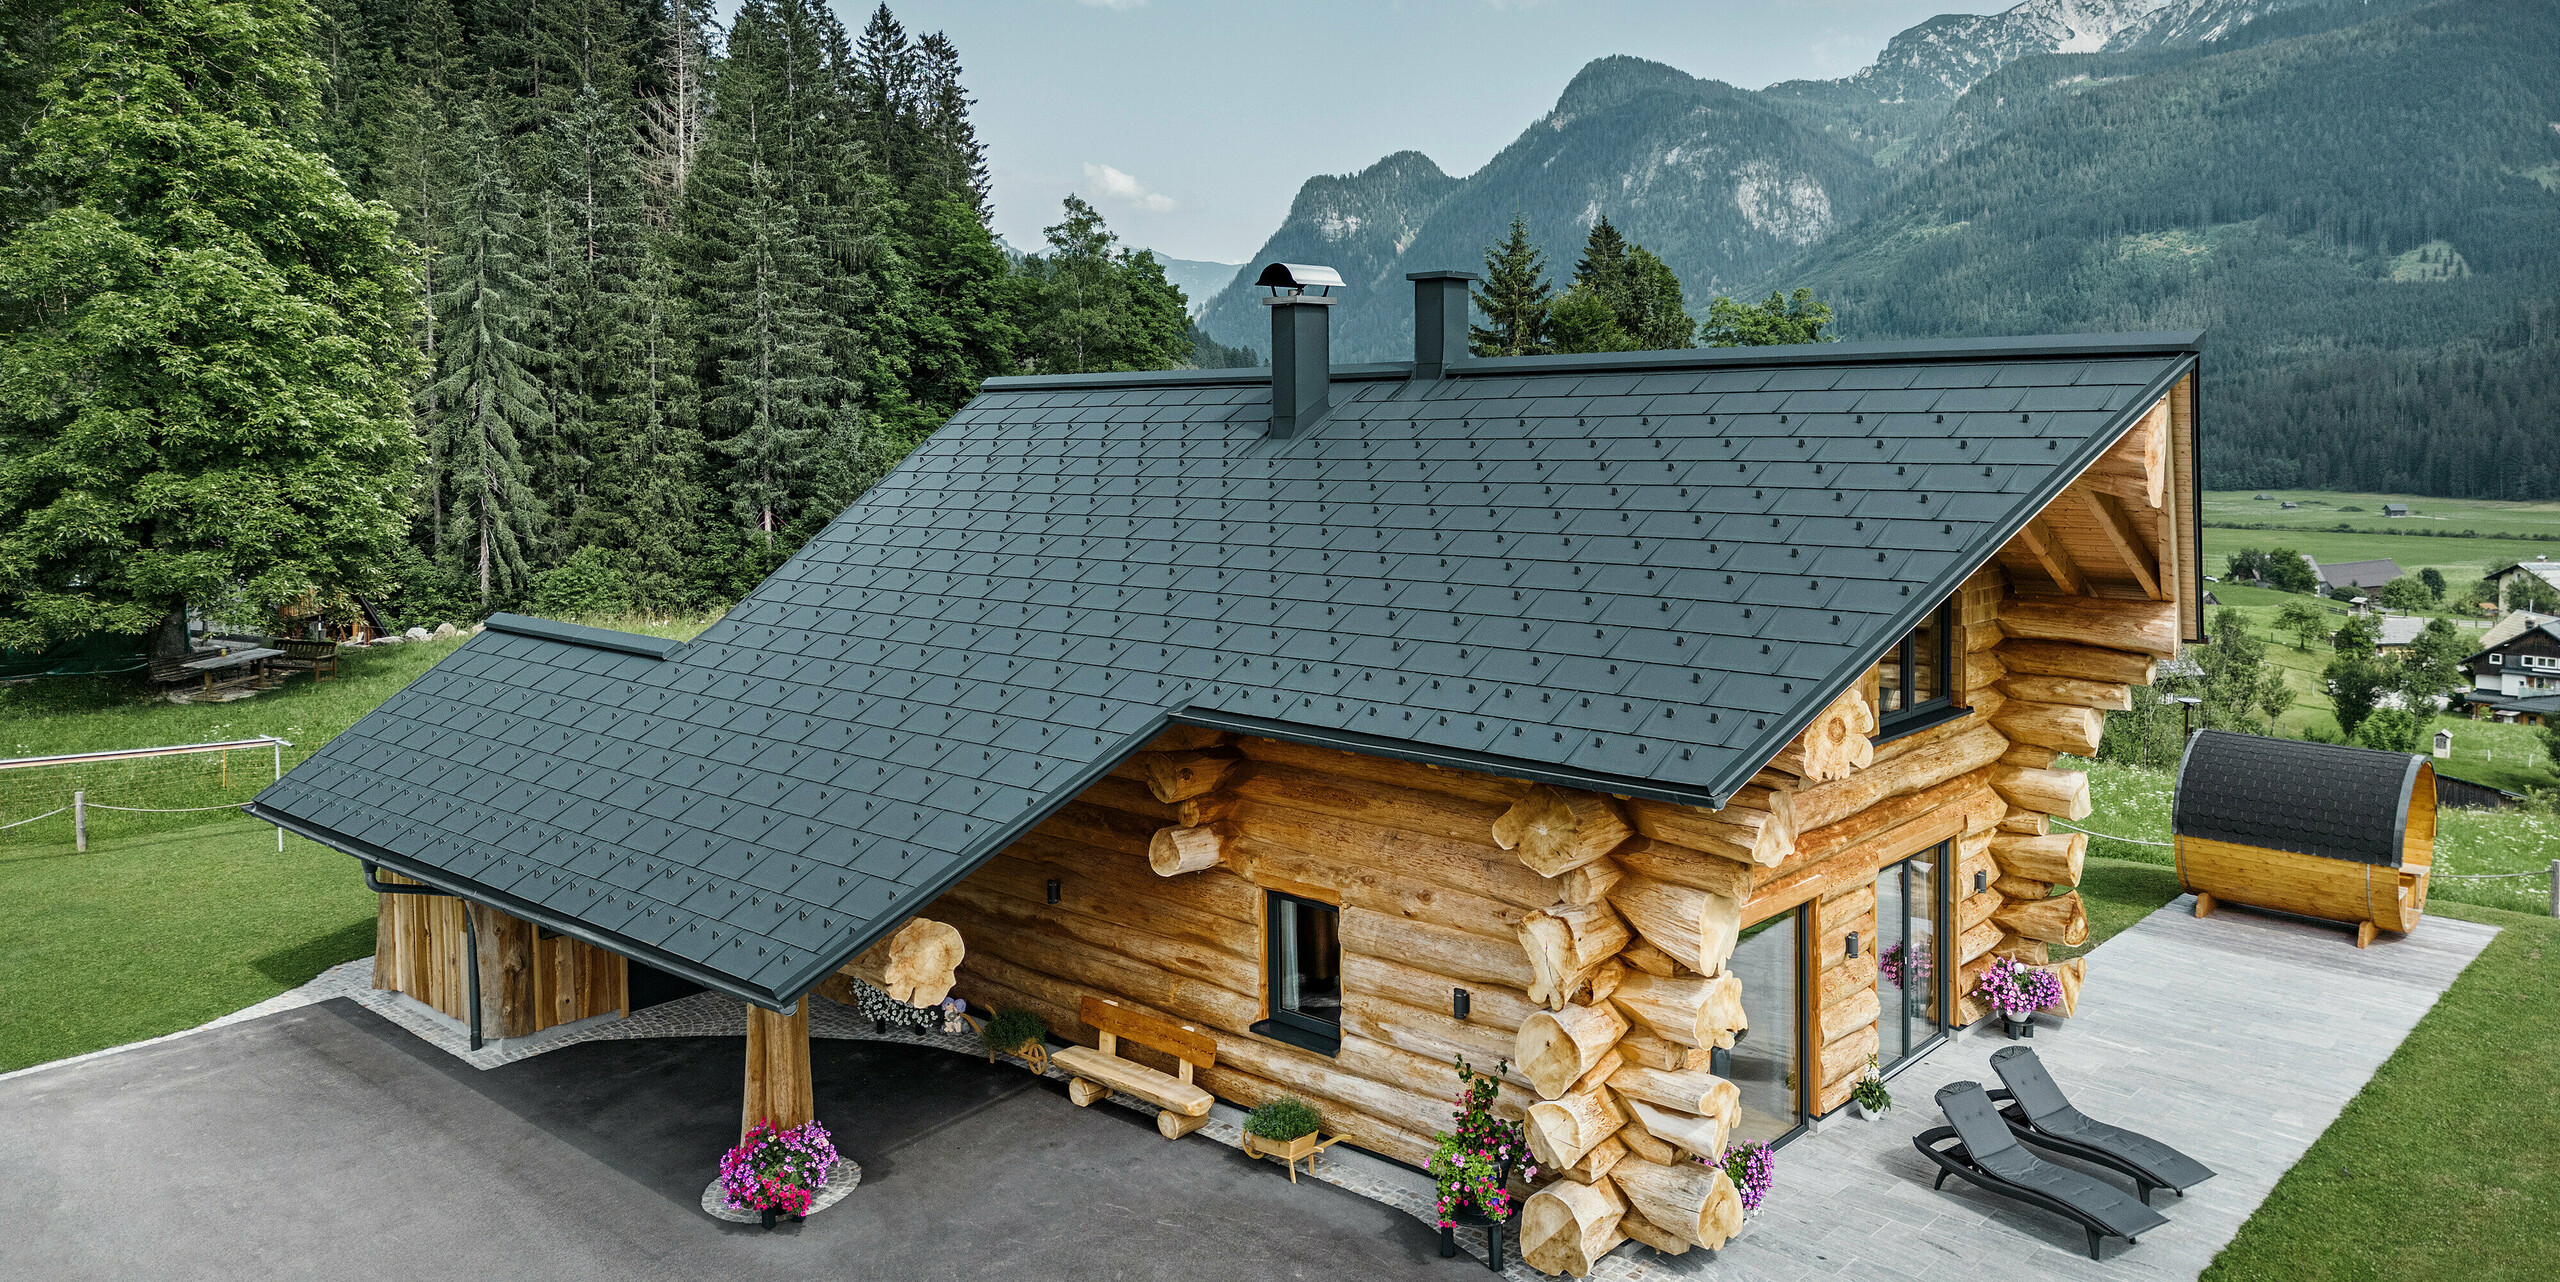 Šikmý pohled na malebný srub v rakouském Gosau vybavený střechou PREFA ze střešních panelů antracitové barvy R.16. Architektura kombinuje styl rustikálního srubu s moderními prvky, obklopený hustými zelenými lesy a působivou horskou kulisou. Dům vyzařuje přívětivou atmosférou svou venkovskou elegancí a precizně položenými hliníkovými střešními prvky, které jsou známé svou životností a odolností vůči povětrnostním vlivům.